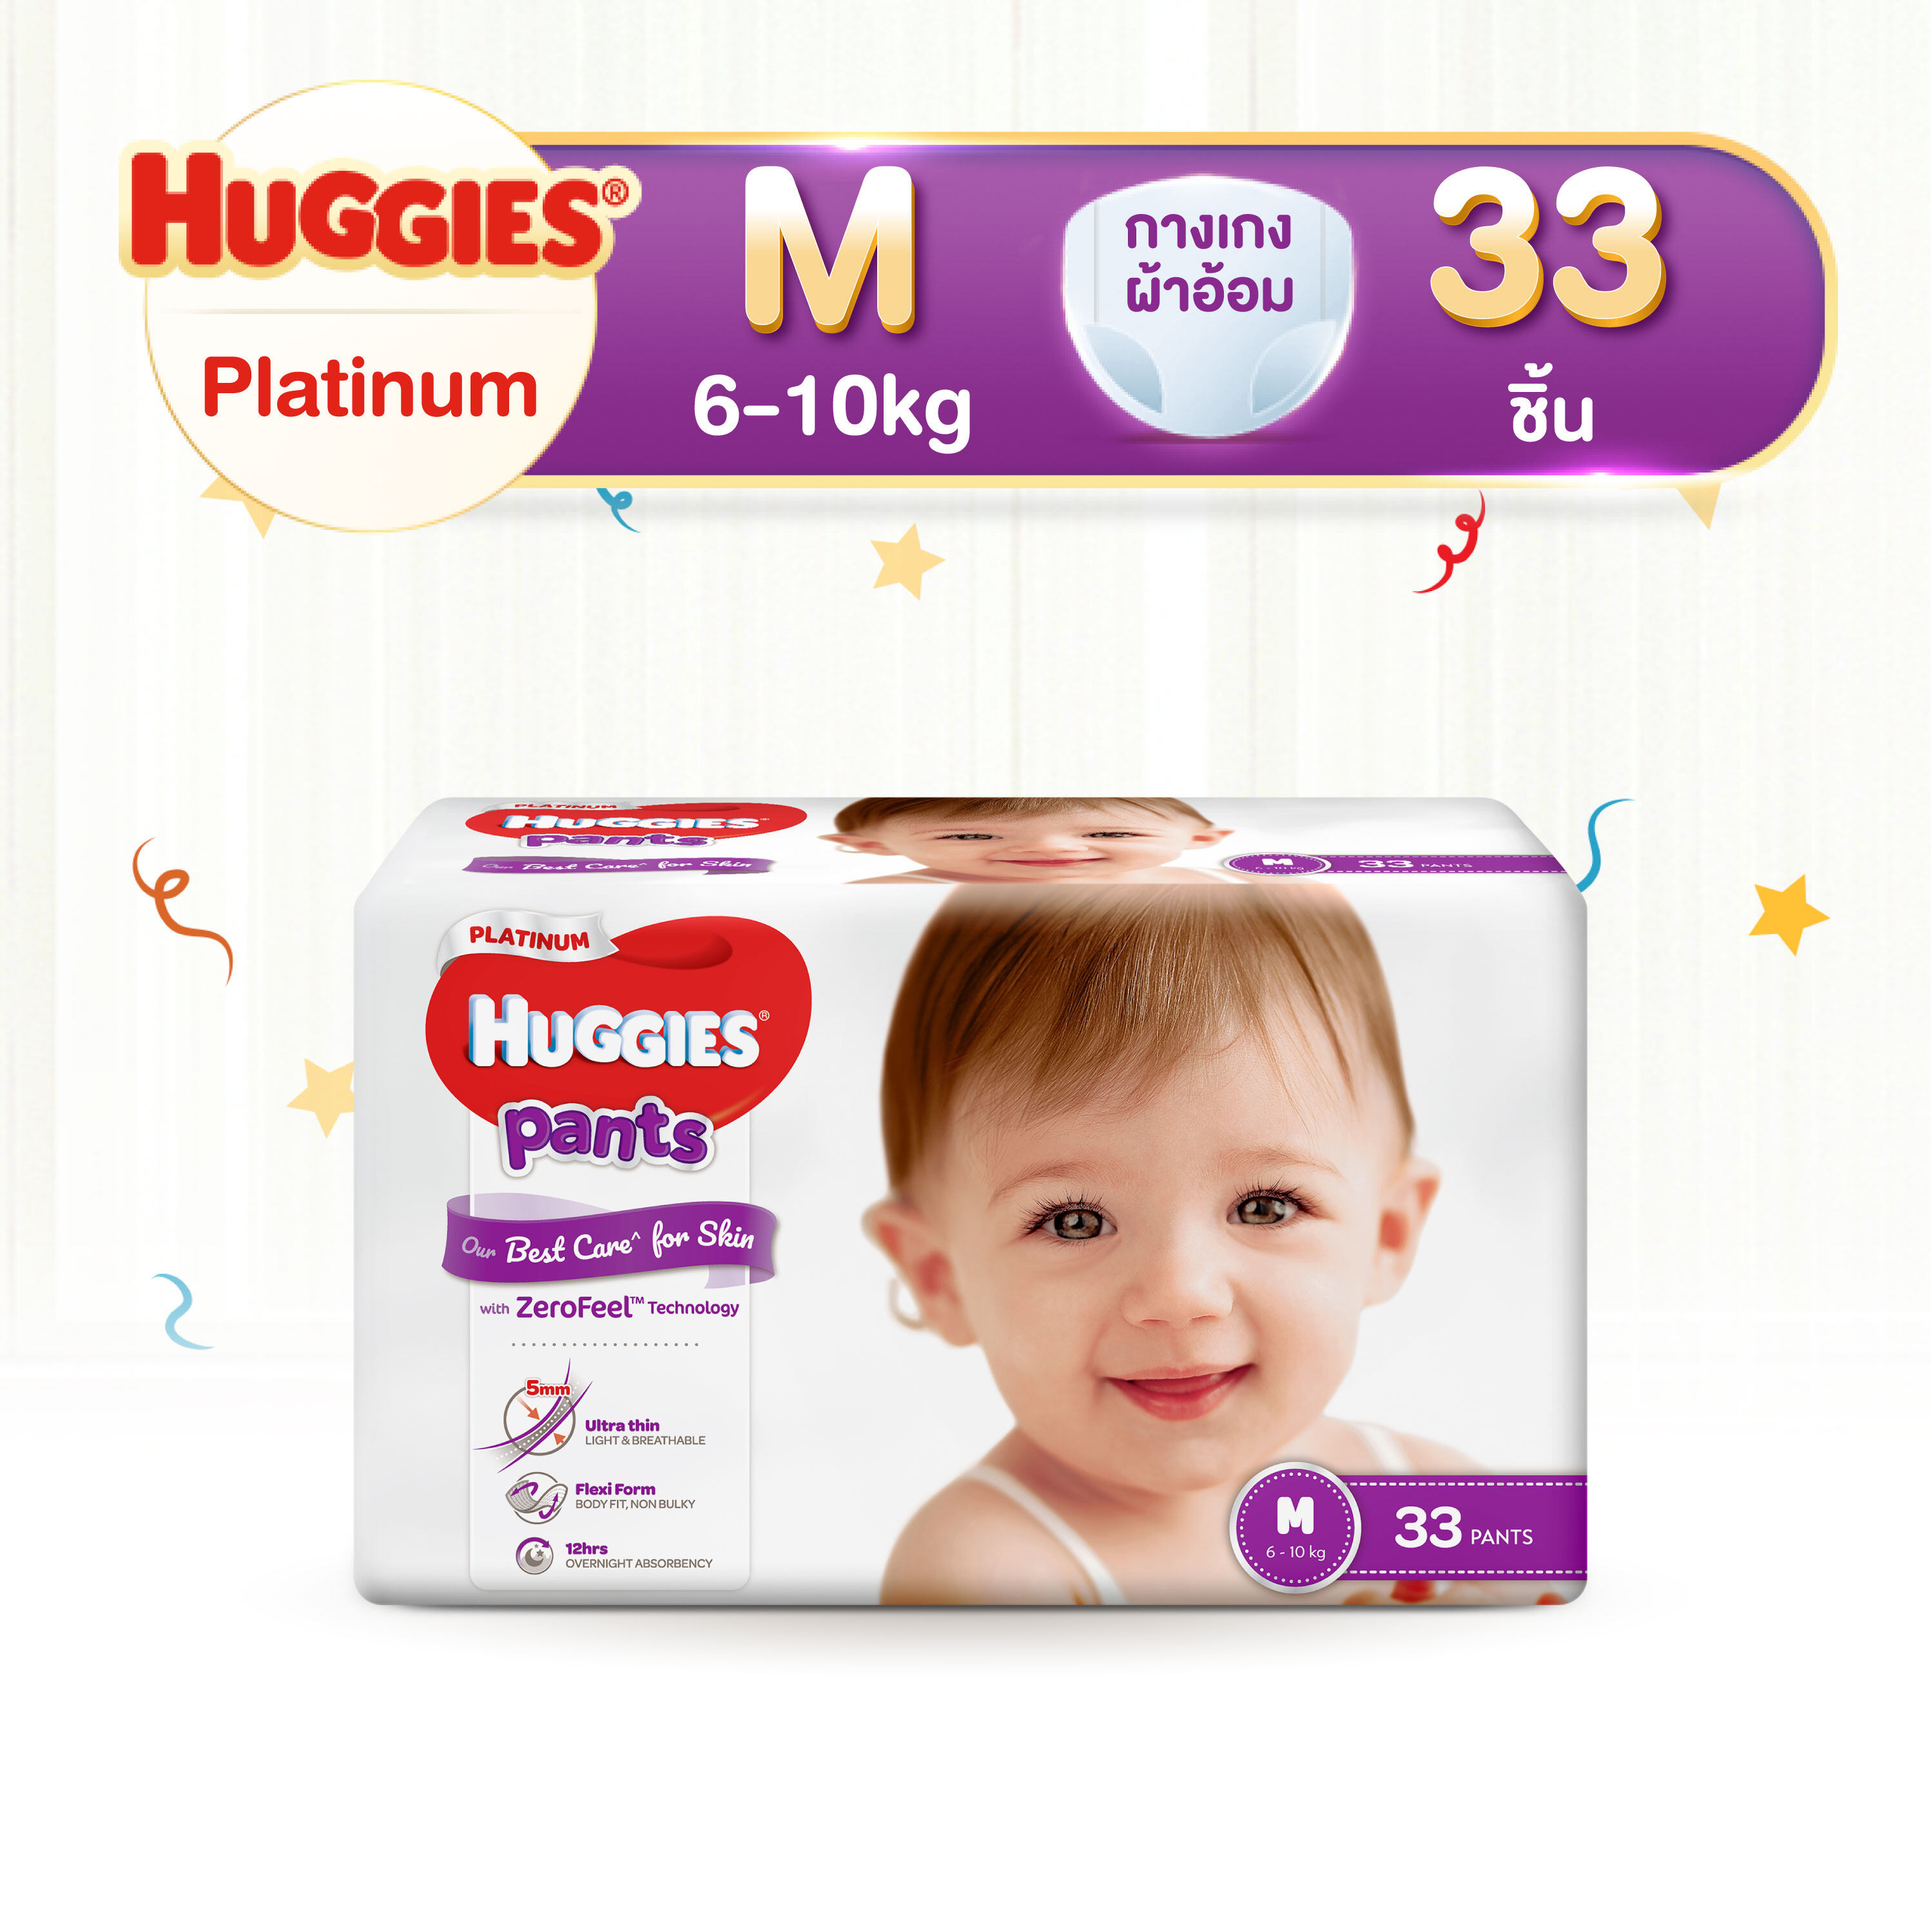 ราคา Huggies Platinum Pants Diapers ฮักกี้ส์ แพลทินัม ผ้าอ้อมเด็ก กางเกงผ้าอ้อม แพมเพิส ผ้าอ้อมเด็กชาย ผ้าอ้อมเด็กหญิง ไซส์ M (6-11 kg) แพค 33 ชิ้น